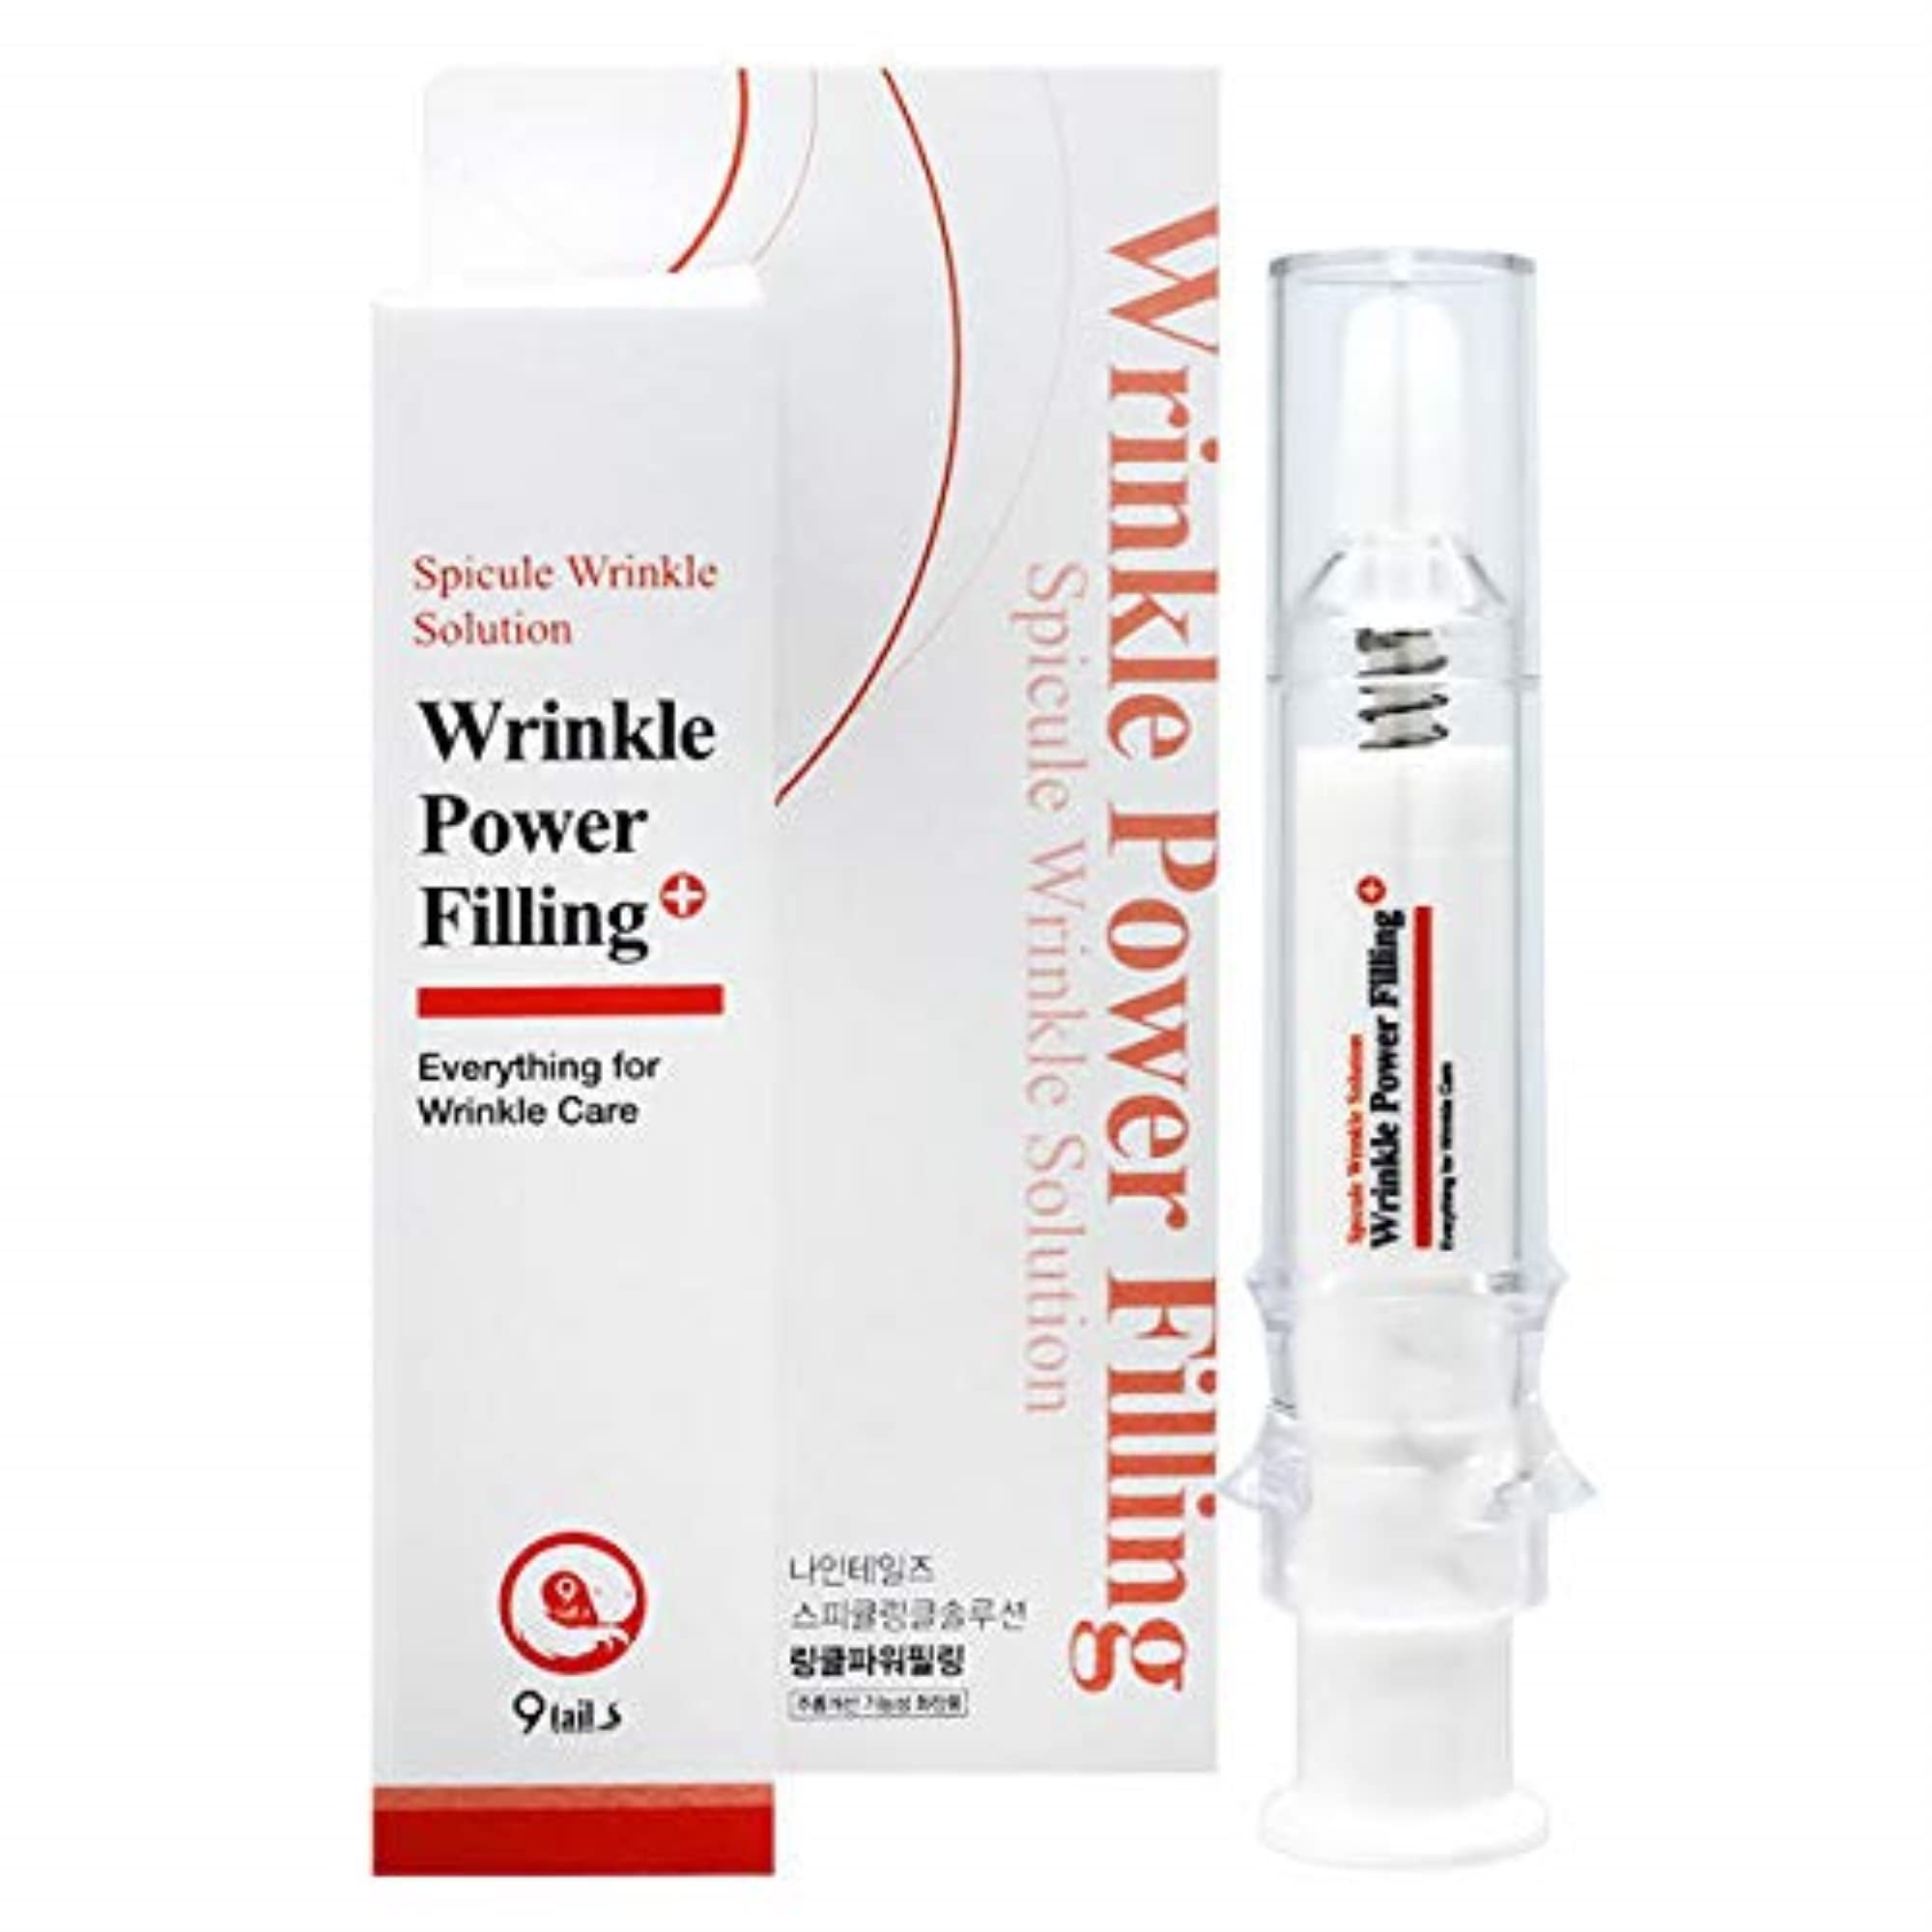 Wrinkle Power Filling - en pharmacie - sur Amazon - site du fabricant - prix - où acheter